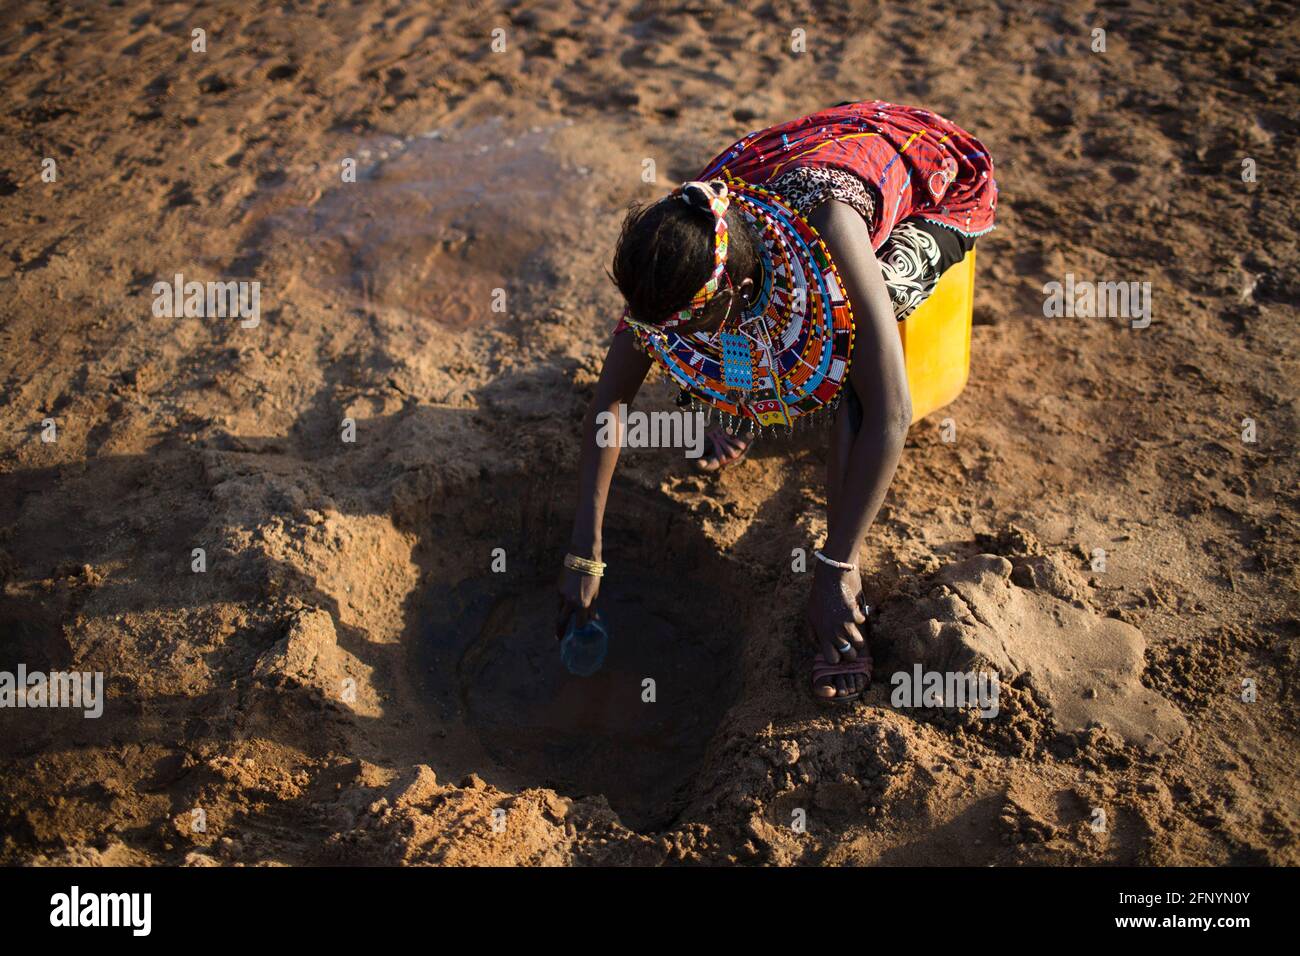 Le 19 février 2015, une femme recueille de l'eau filtrée nettoyée dans un trou creusé près d'une rivière près du village d'Umoja à Samburu, au Kenya. Banque D'Images